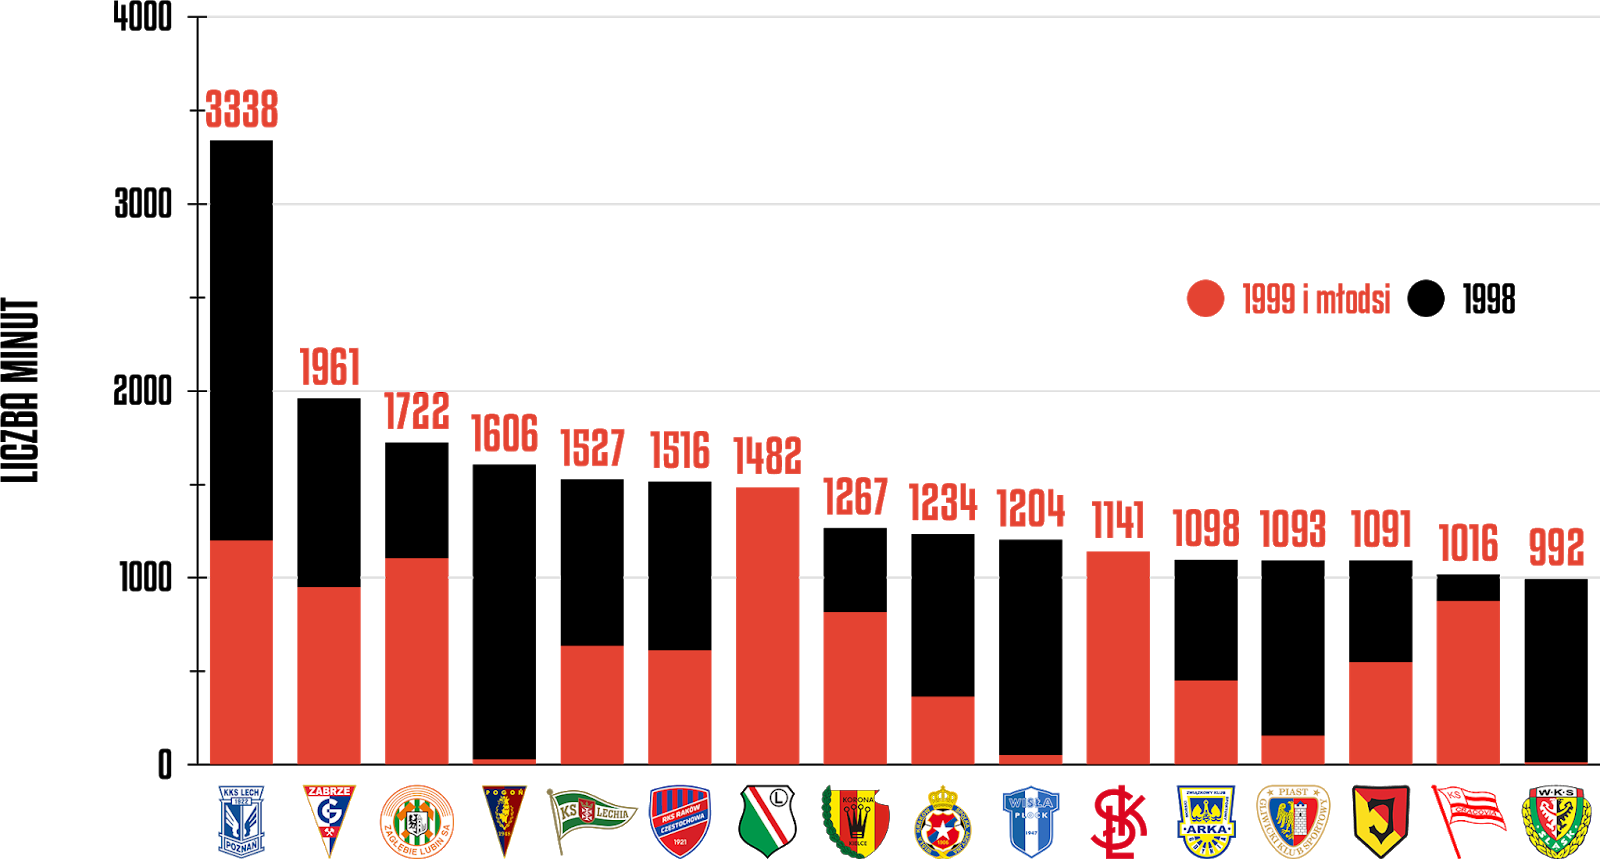 Klasyfikacja klubów pod względem rozegranych minut przez młodzieżowców po 11 kolejkach PKO Ekstraklasy<br><br>Źródło: Opracowanie własne na podstawie ekstrastats.pl<br><br>graf. Bartosz Urban